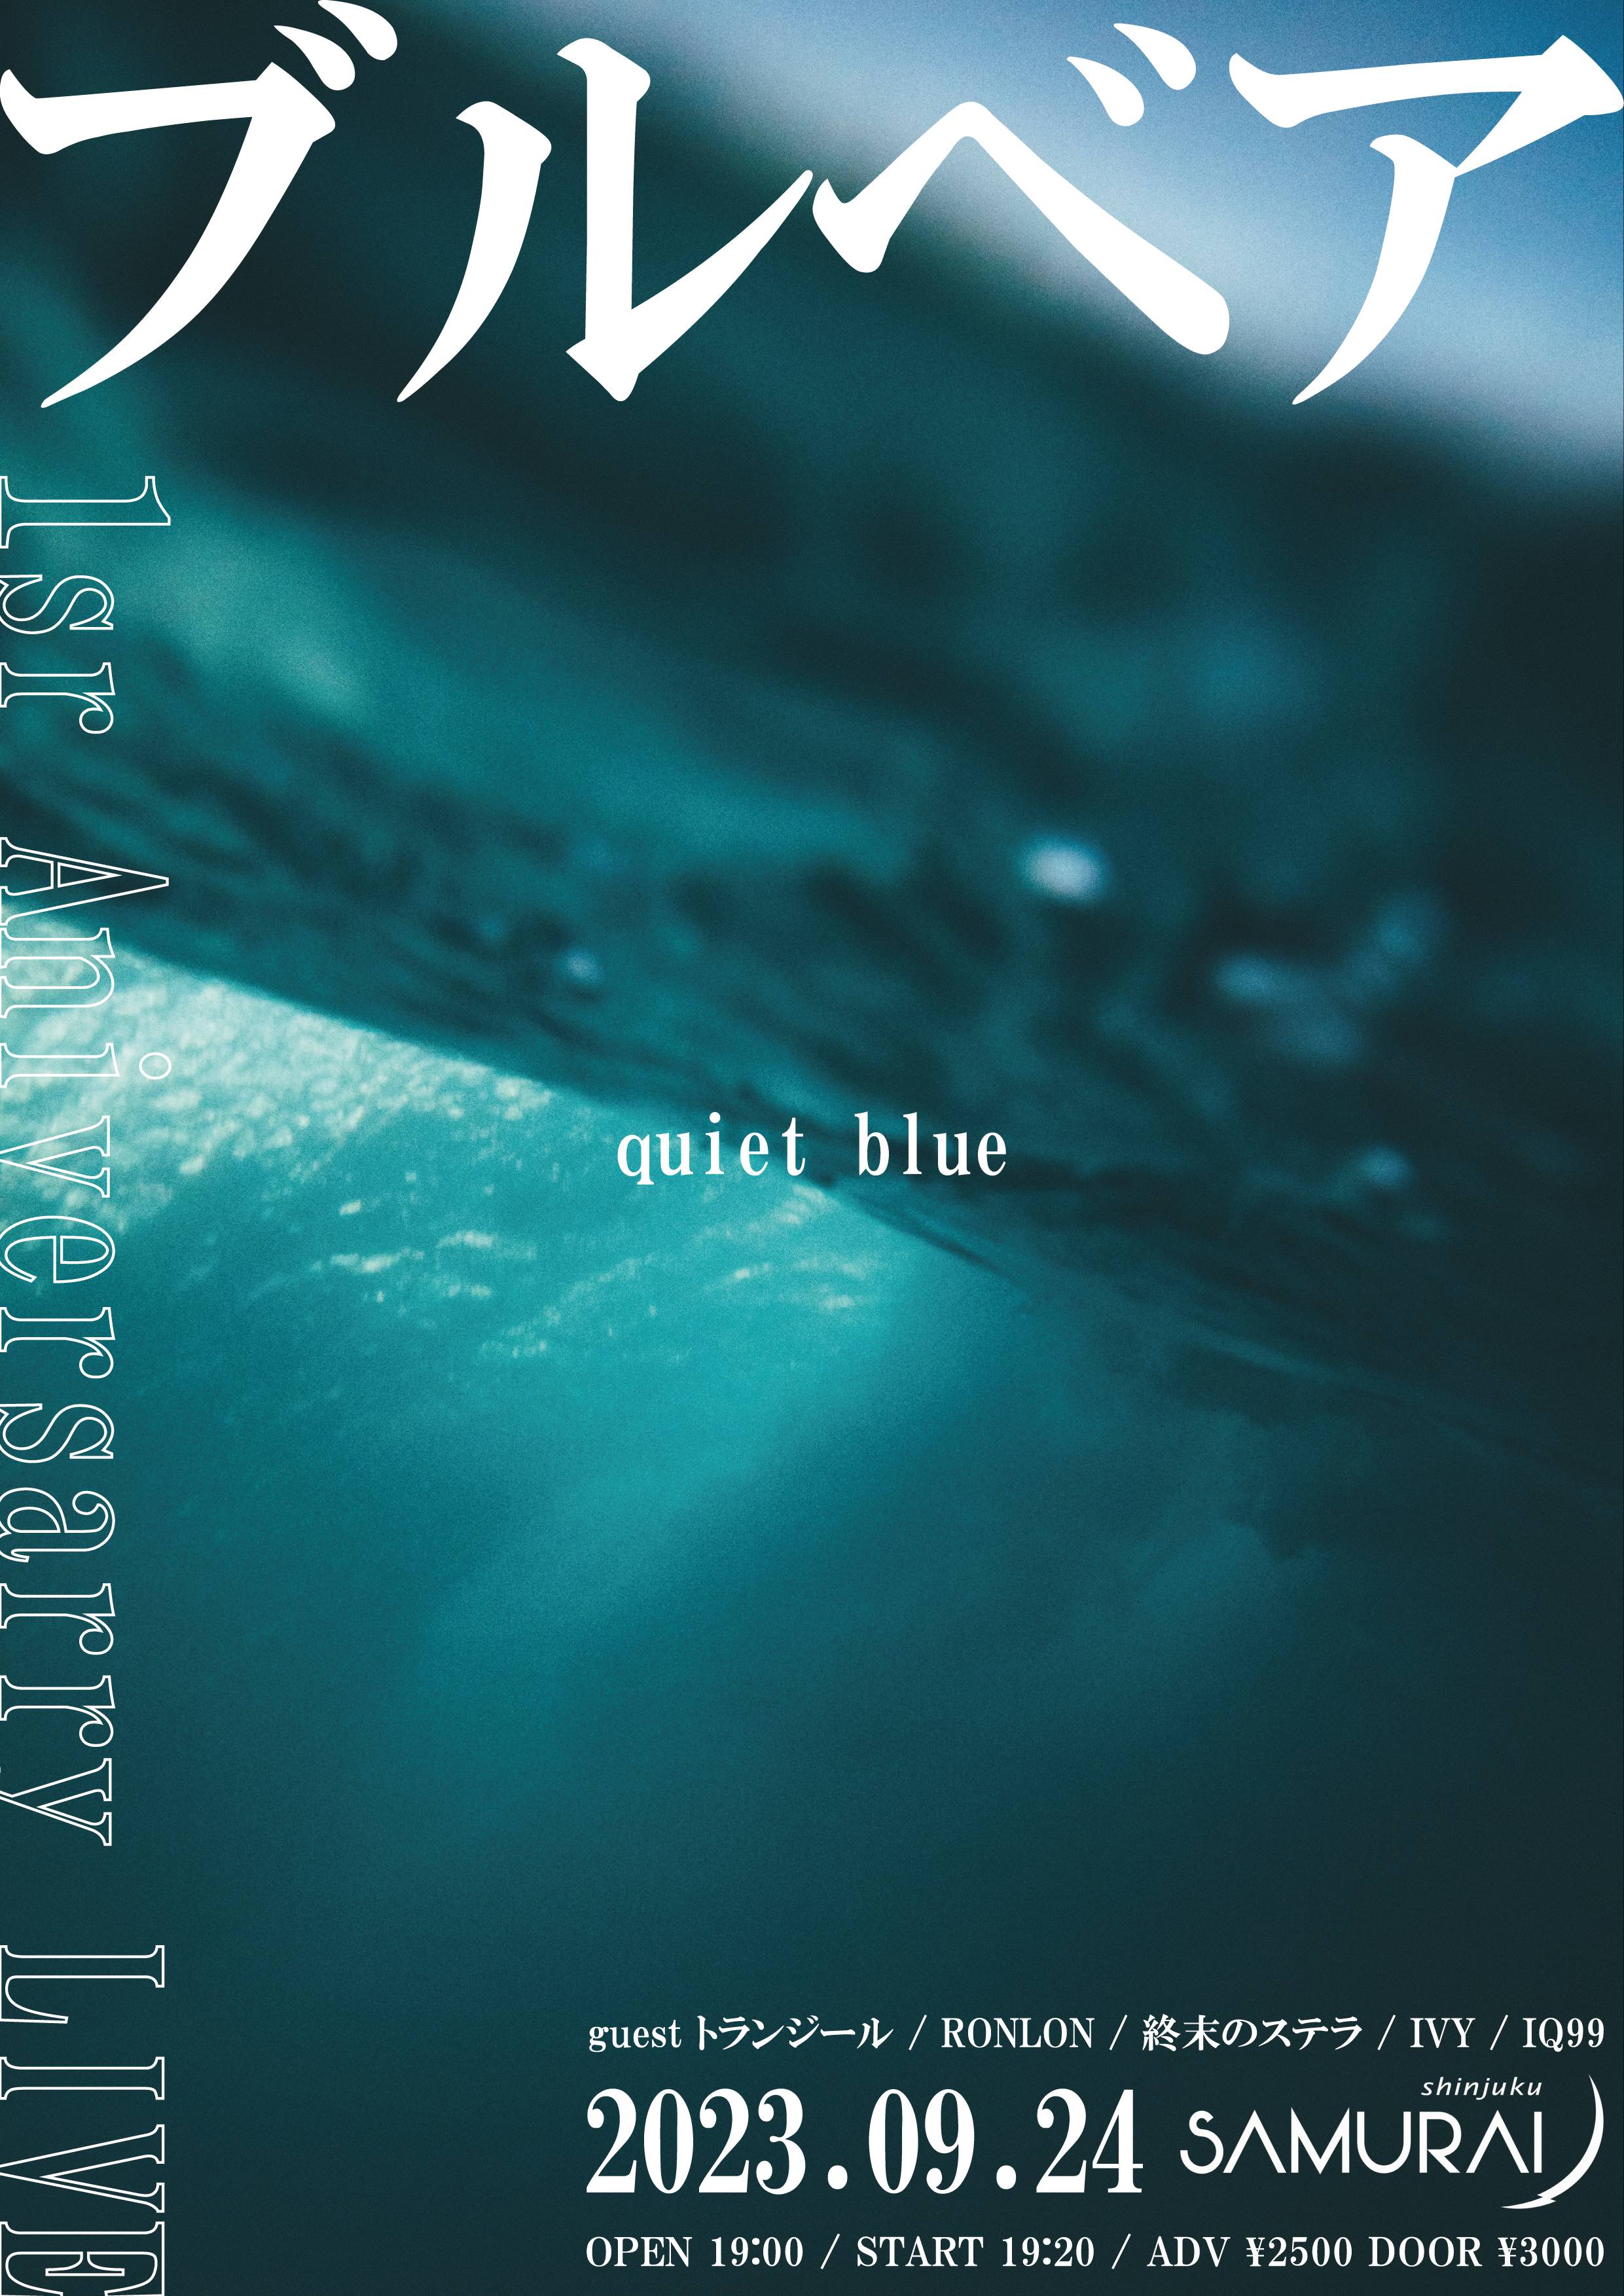 ブルベア1st anniversary live 「quiet blue」